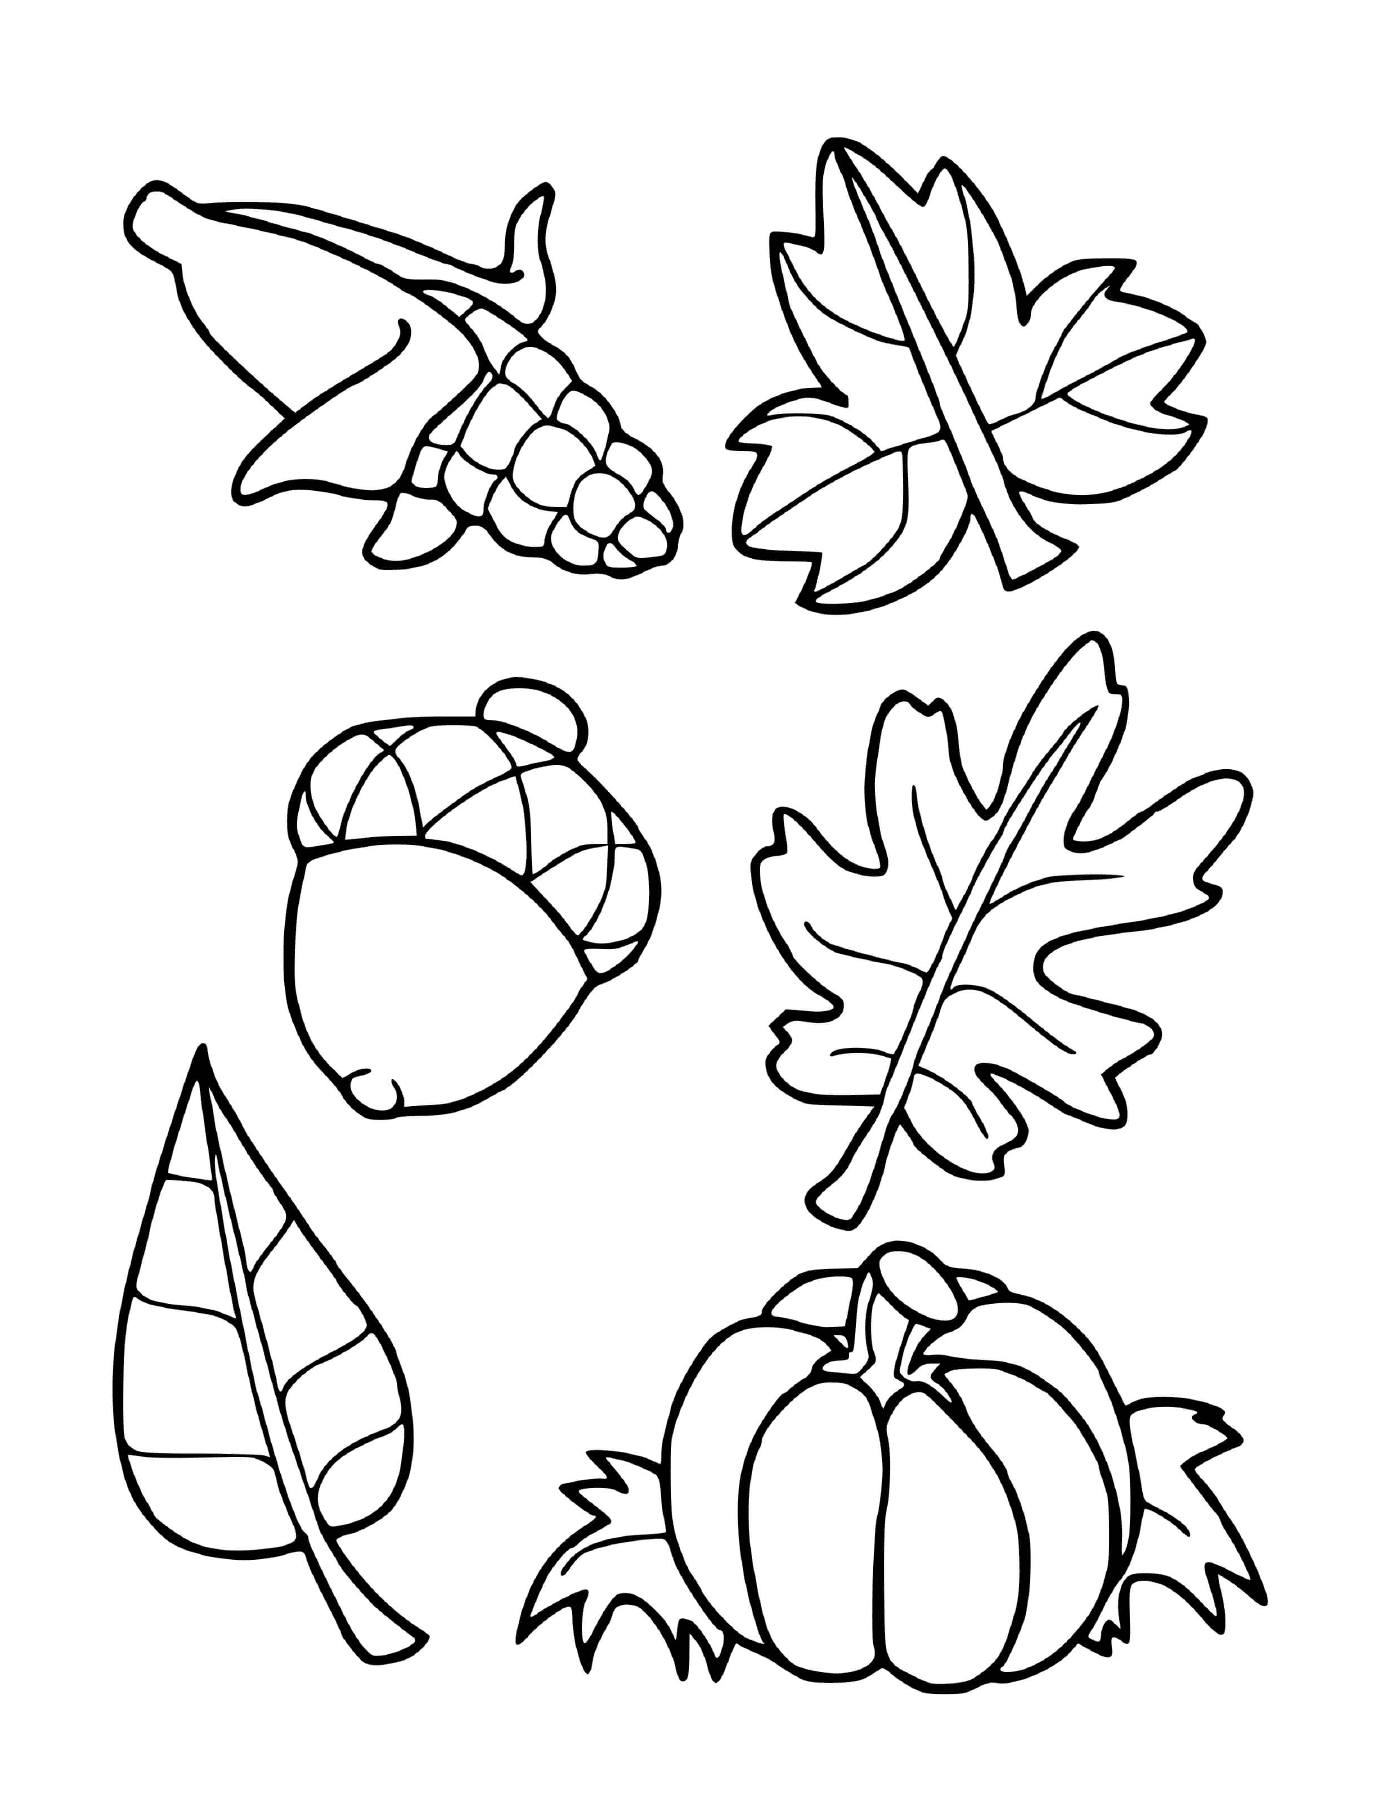  Seis folhas diferentes desenhadas 